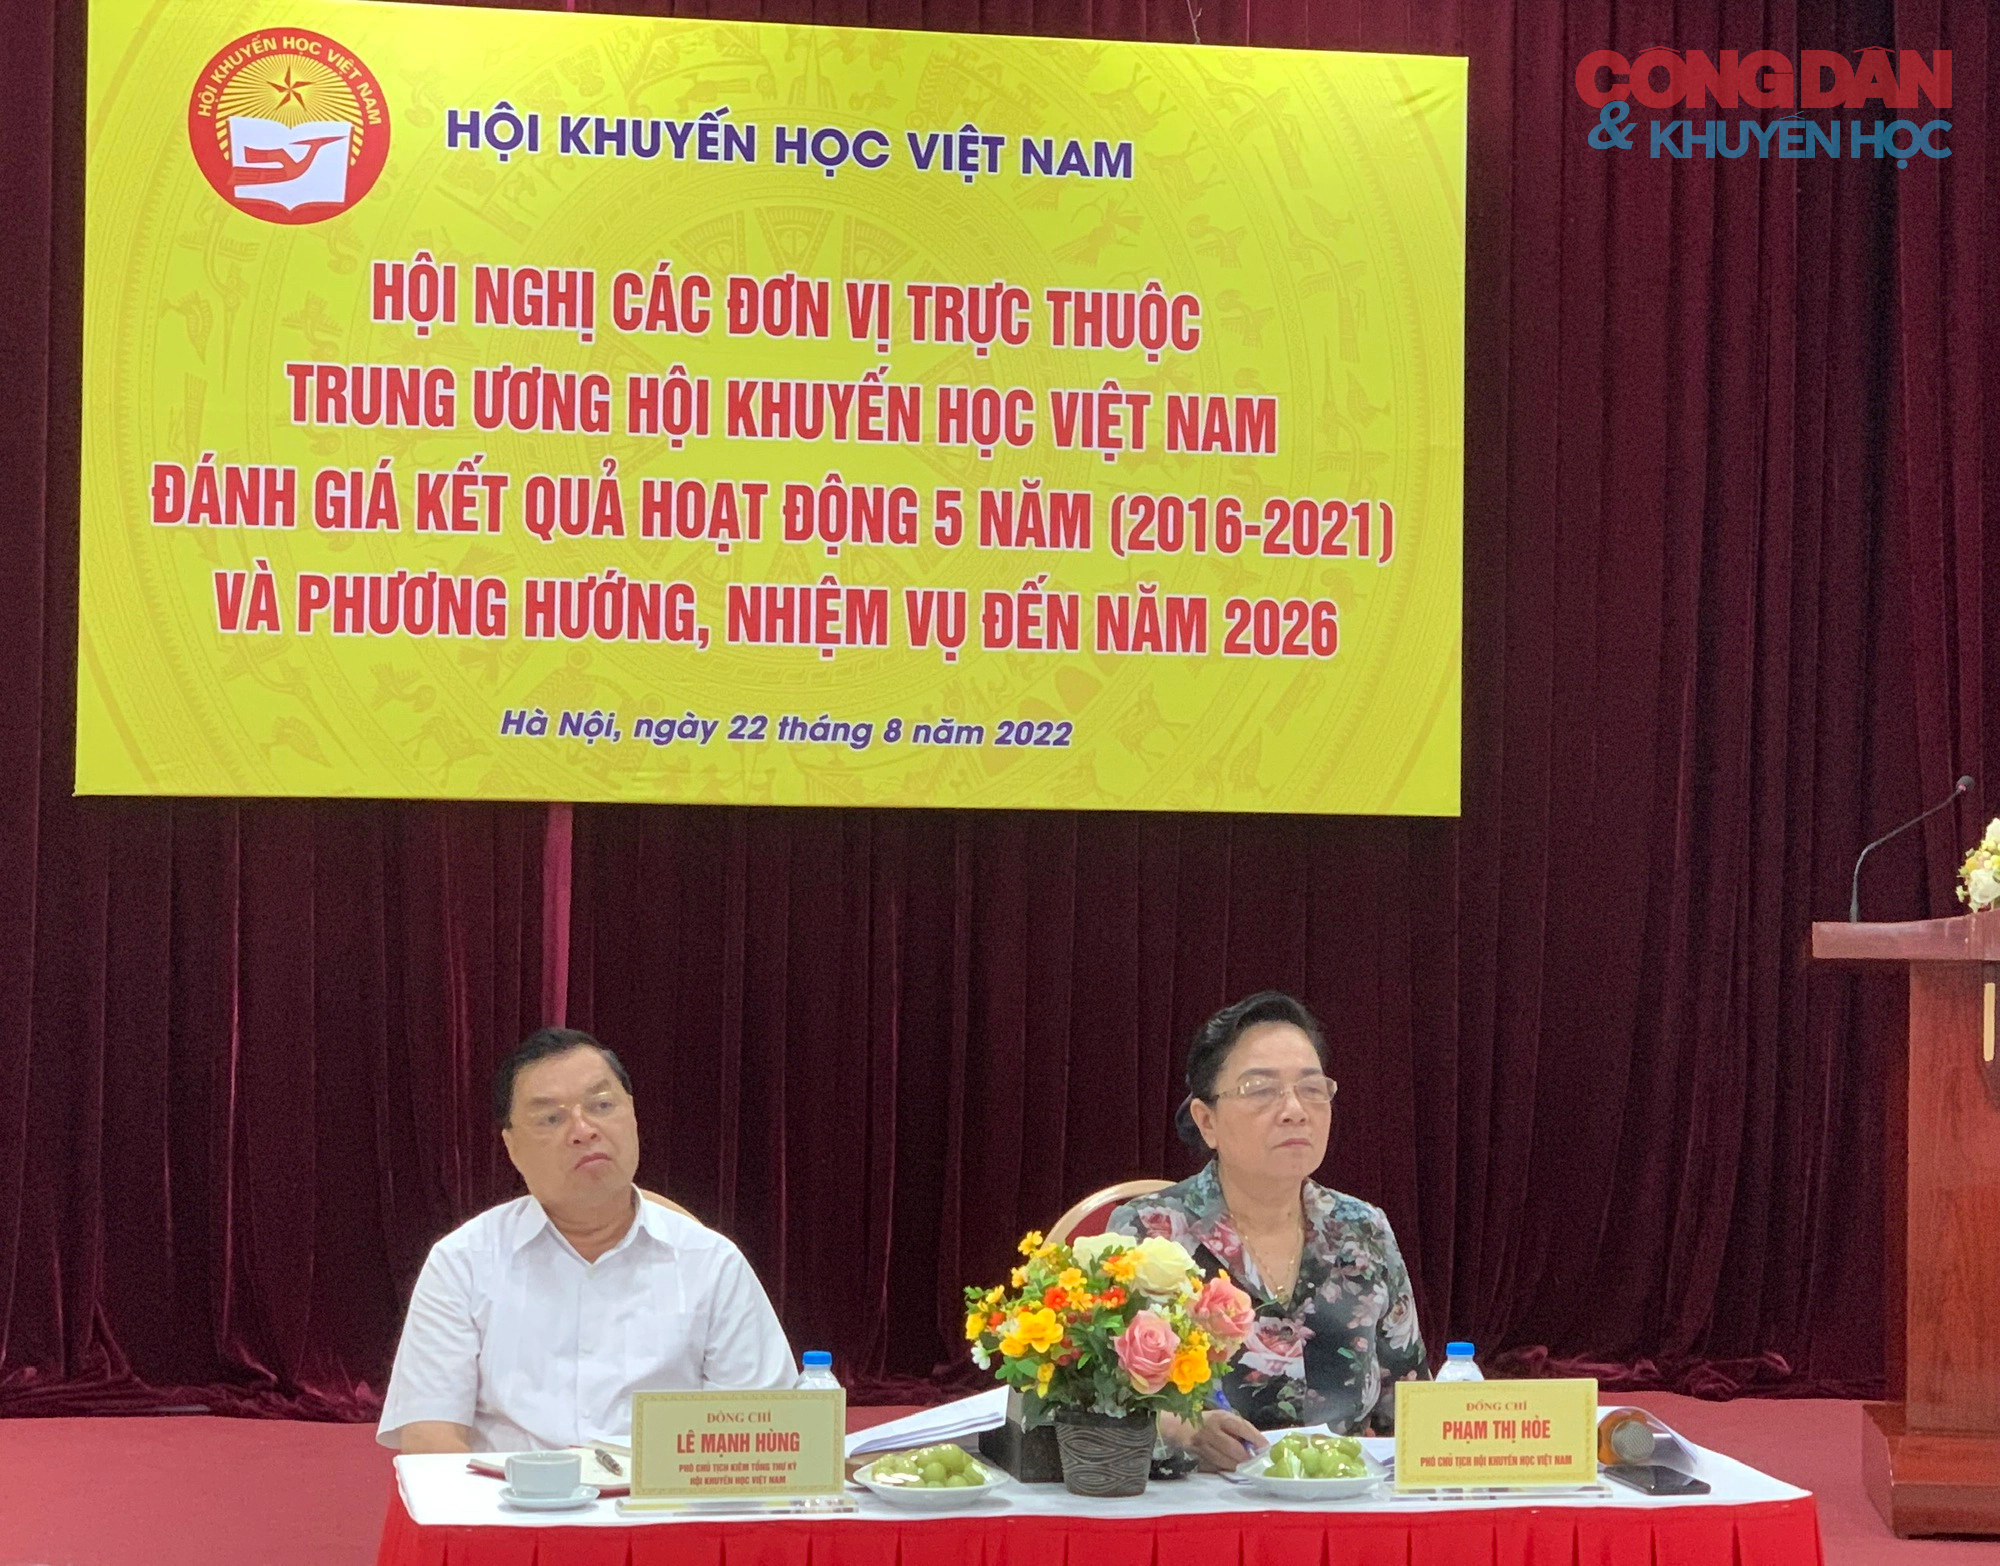 Đánh giá kết quả hoạt động 5 năm của các đơn vị trực thuộc Trung ương Hội Khuyến học Việt Nam - Ảnh 1.